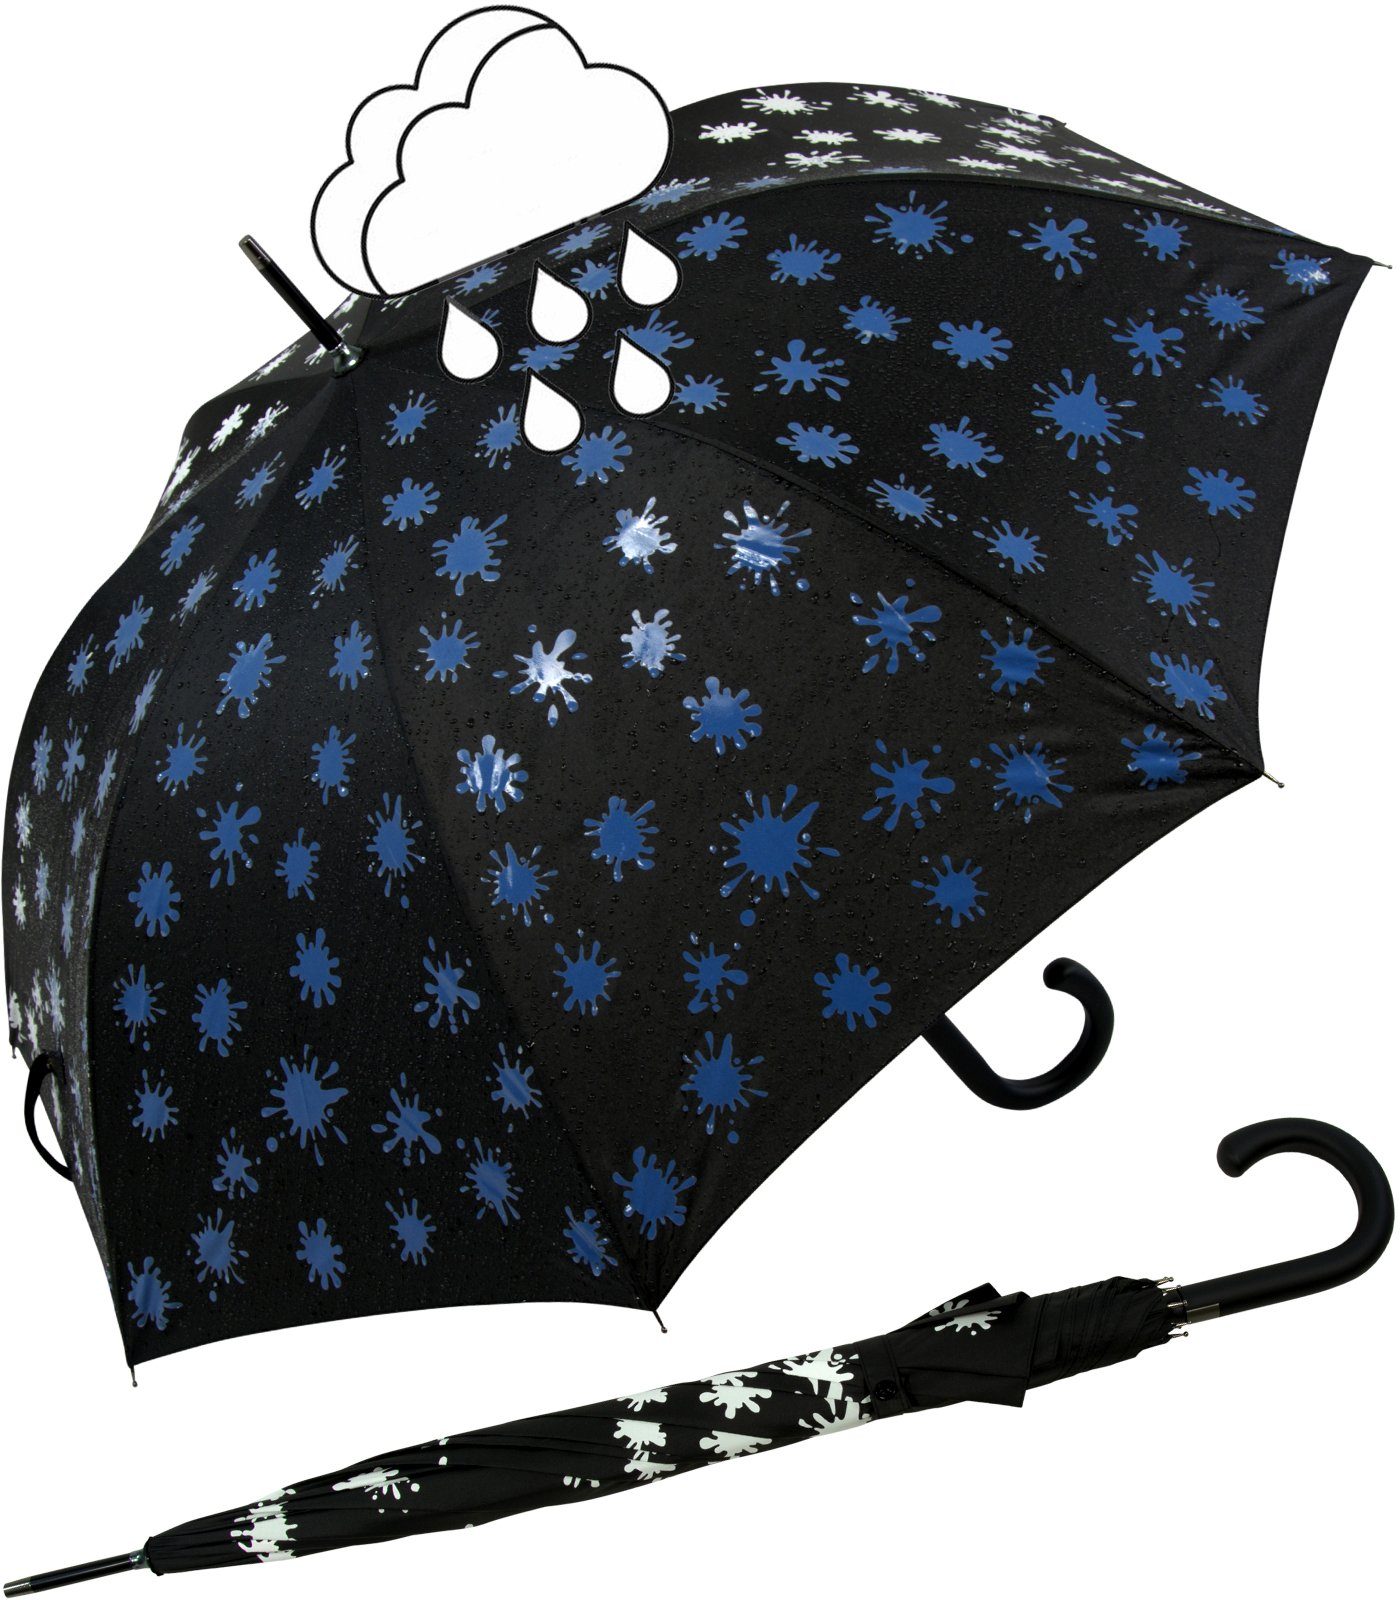 iX-brella Langregenschirm iX-brella Damenschirm mit Automatik und Wet Print, Farbänderung bei Nässe - Farbkleckse blau schwarz-weiß-blau